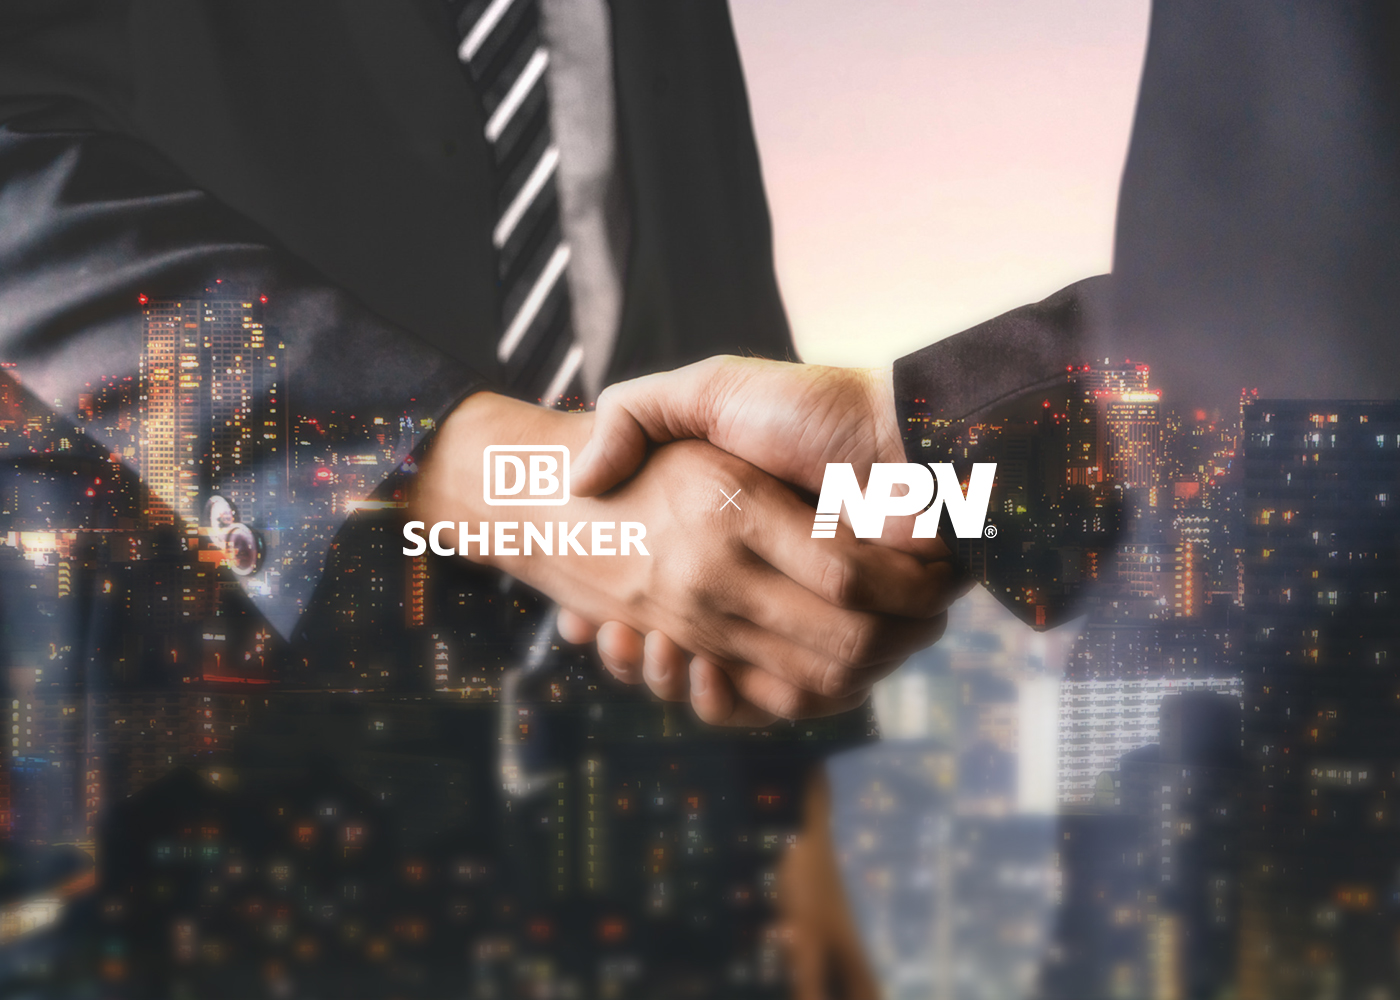 NPN Streamline DB Schenker Supply Chain and Improve Efficiency